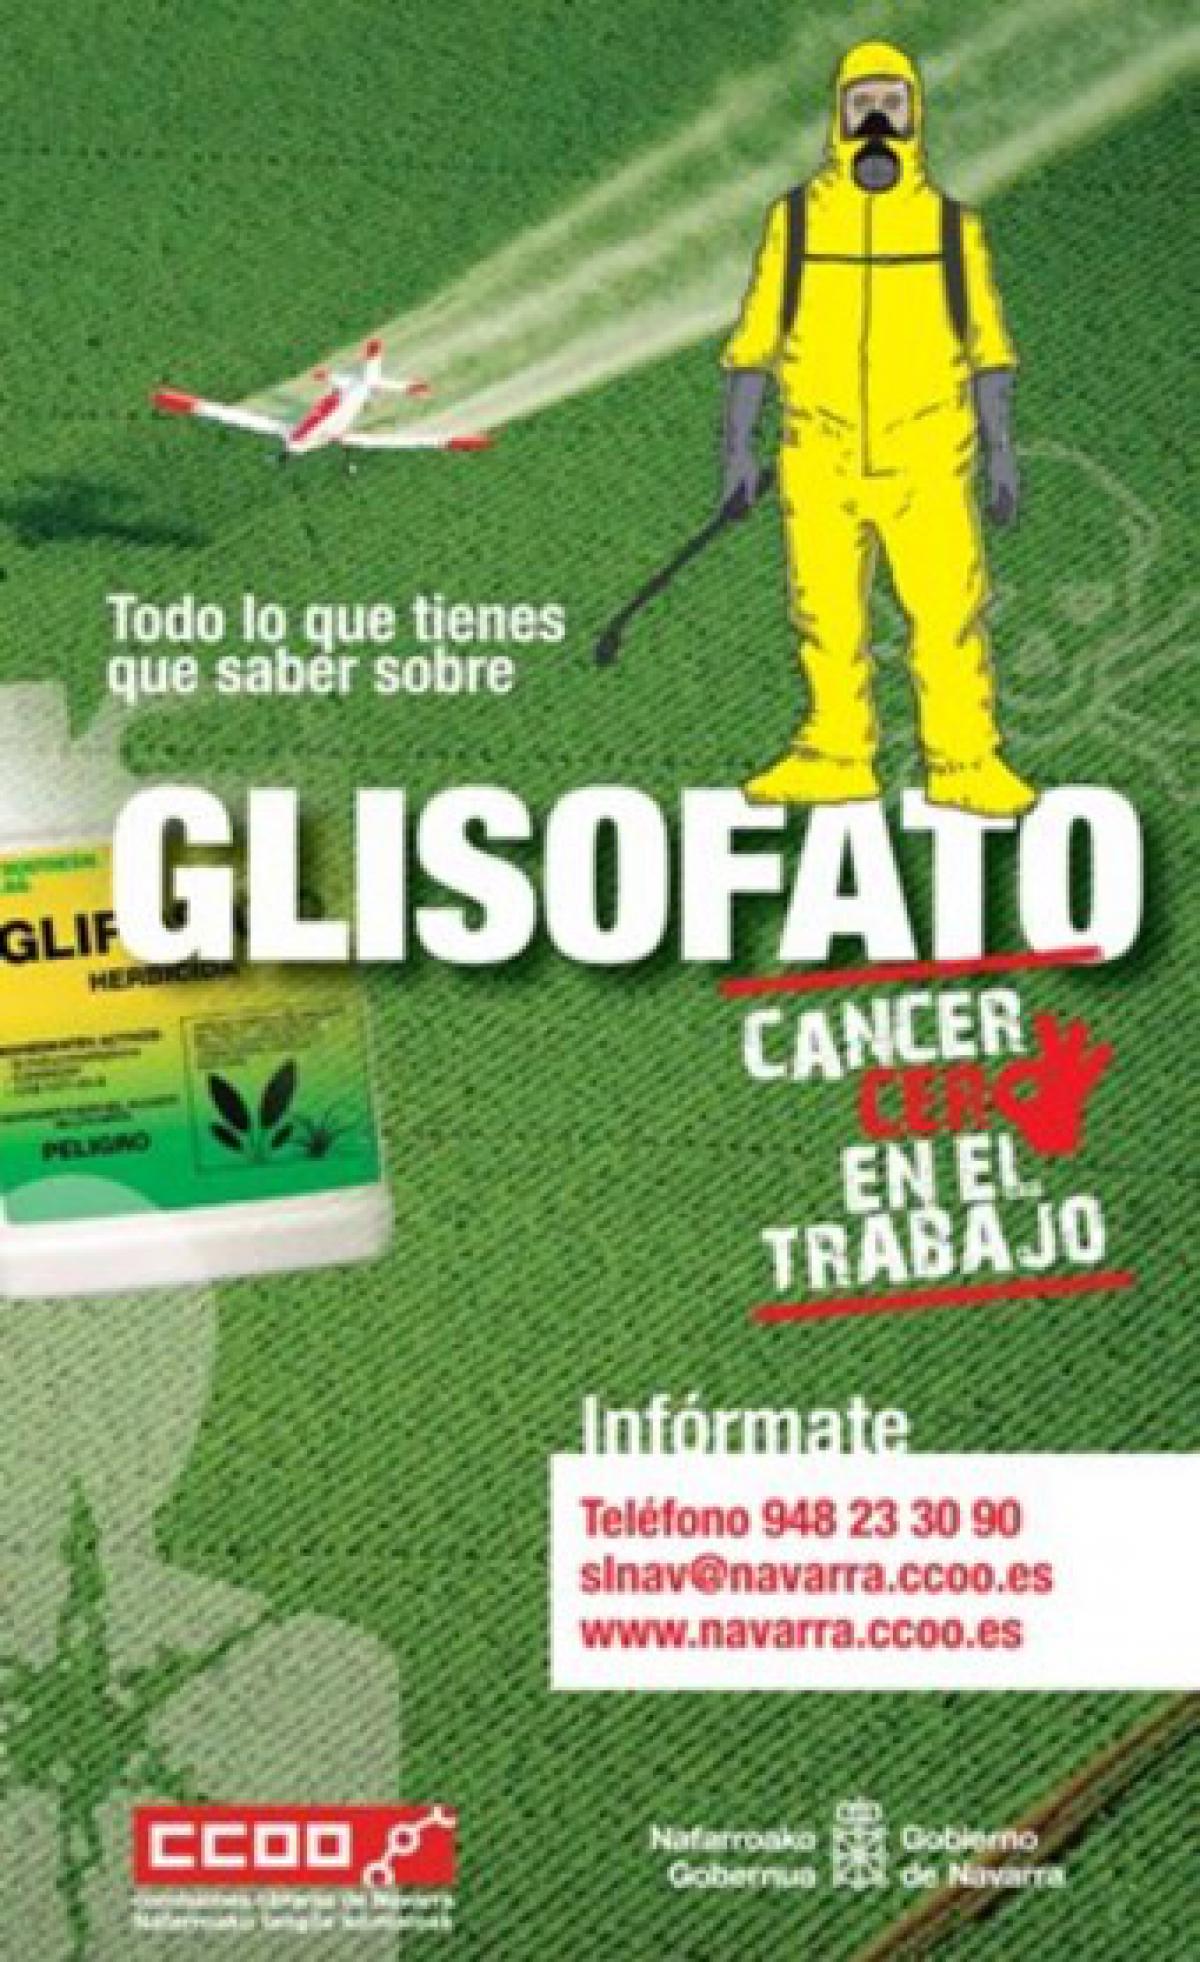 Cartel de CCOO Navarra sobre el glifosato